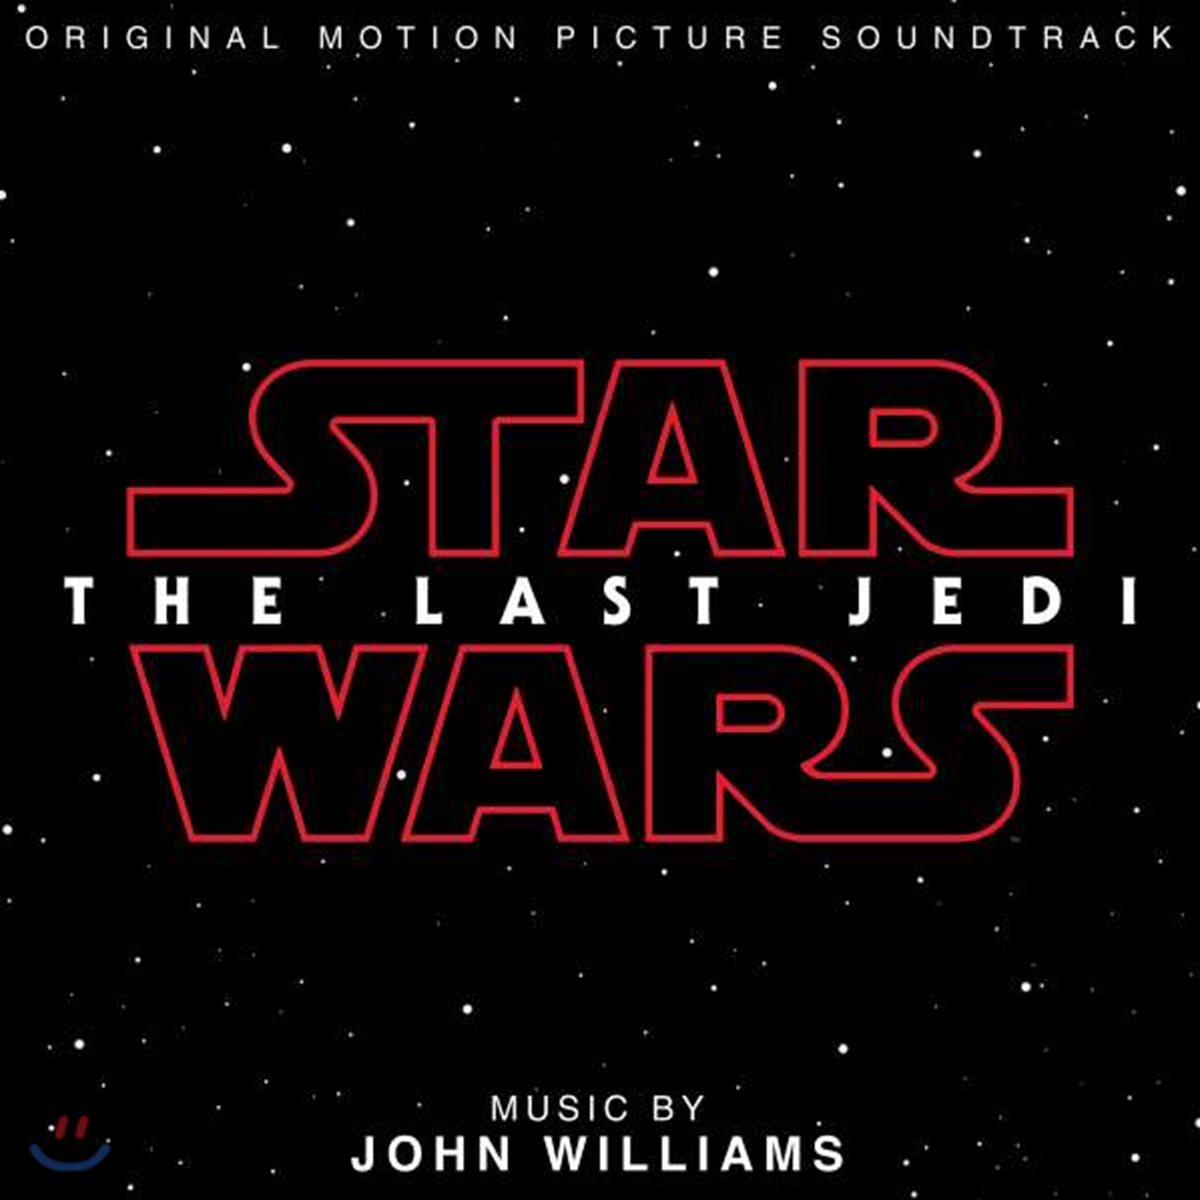 스타워즈: 라스트 제다이 영화음악 (Star Wars: The Last Jedi OST By John Williams 존 윌리엄스) [Deluxe Edition]